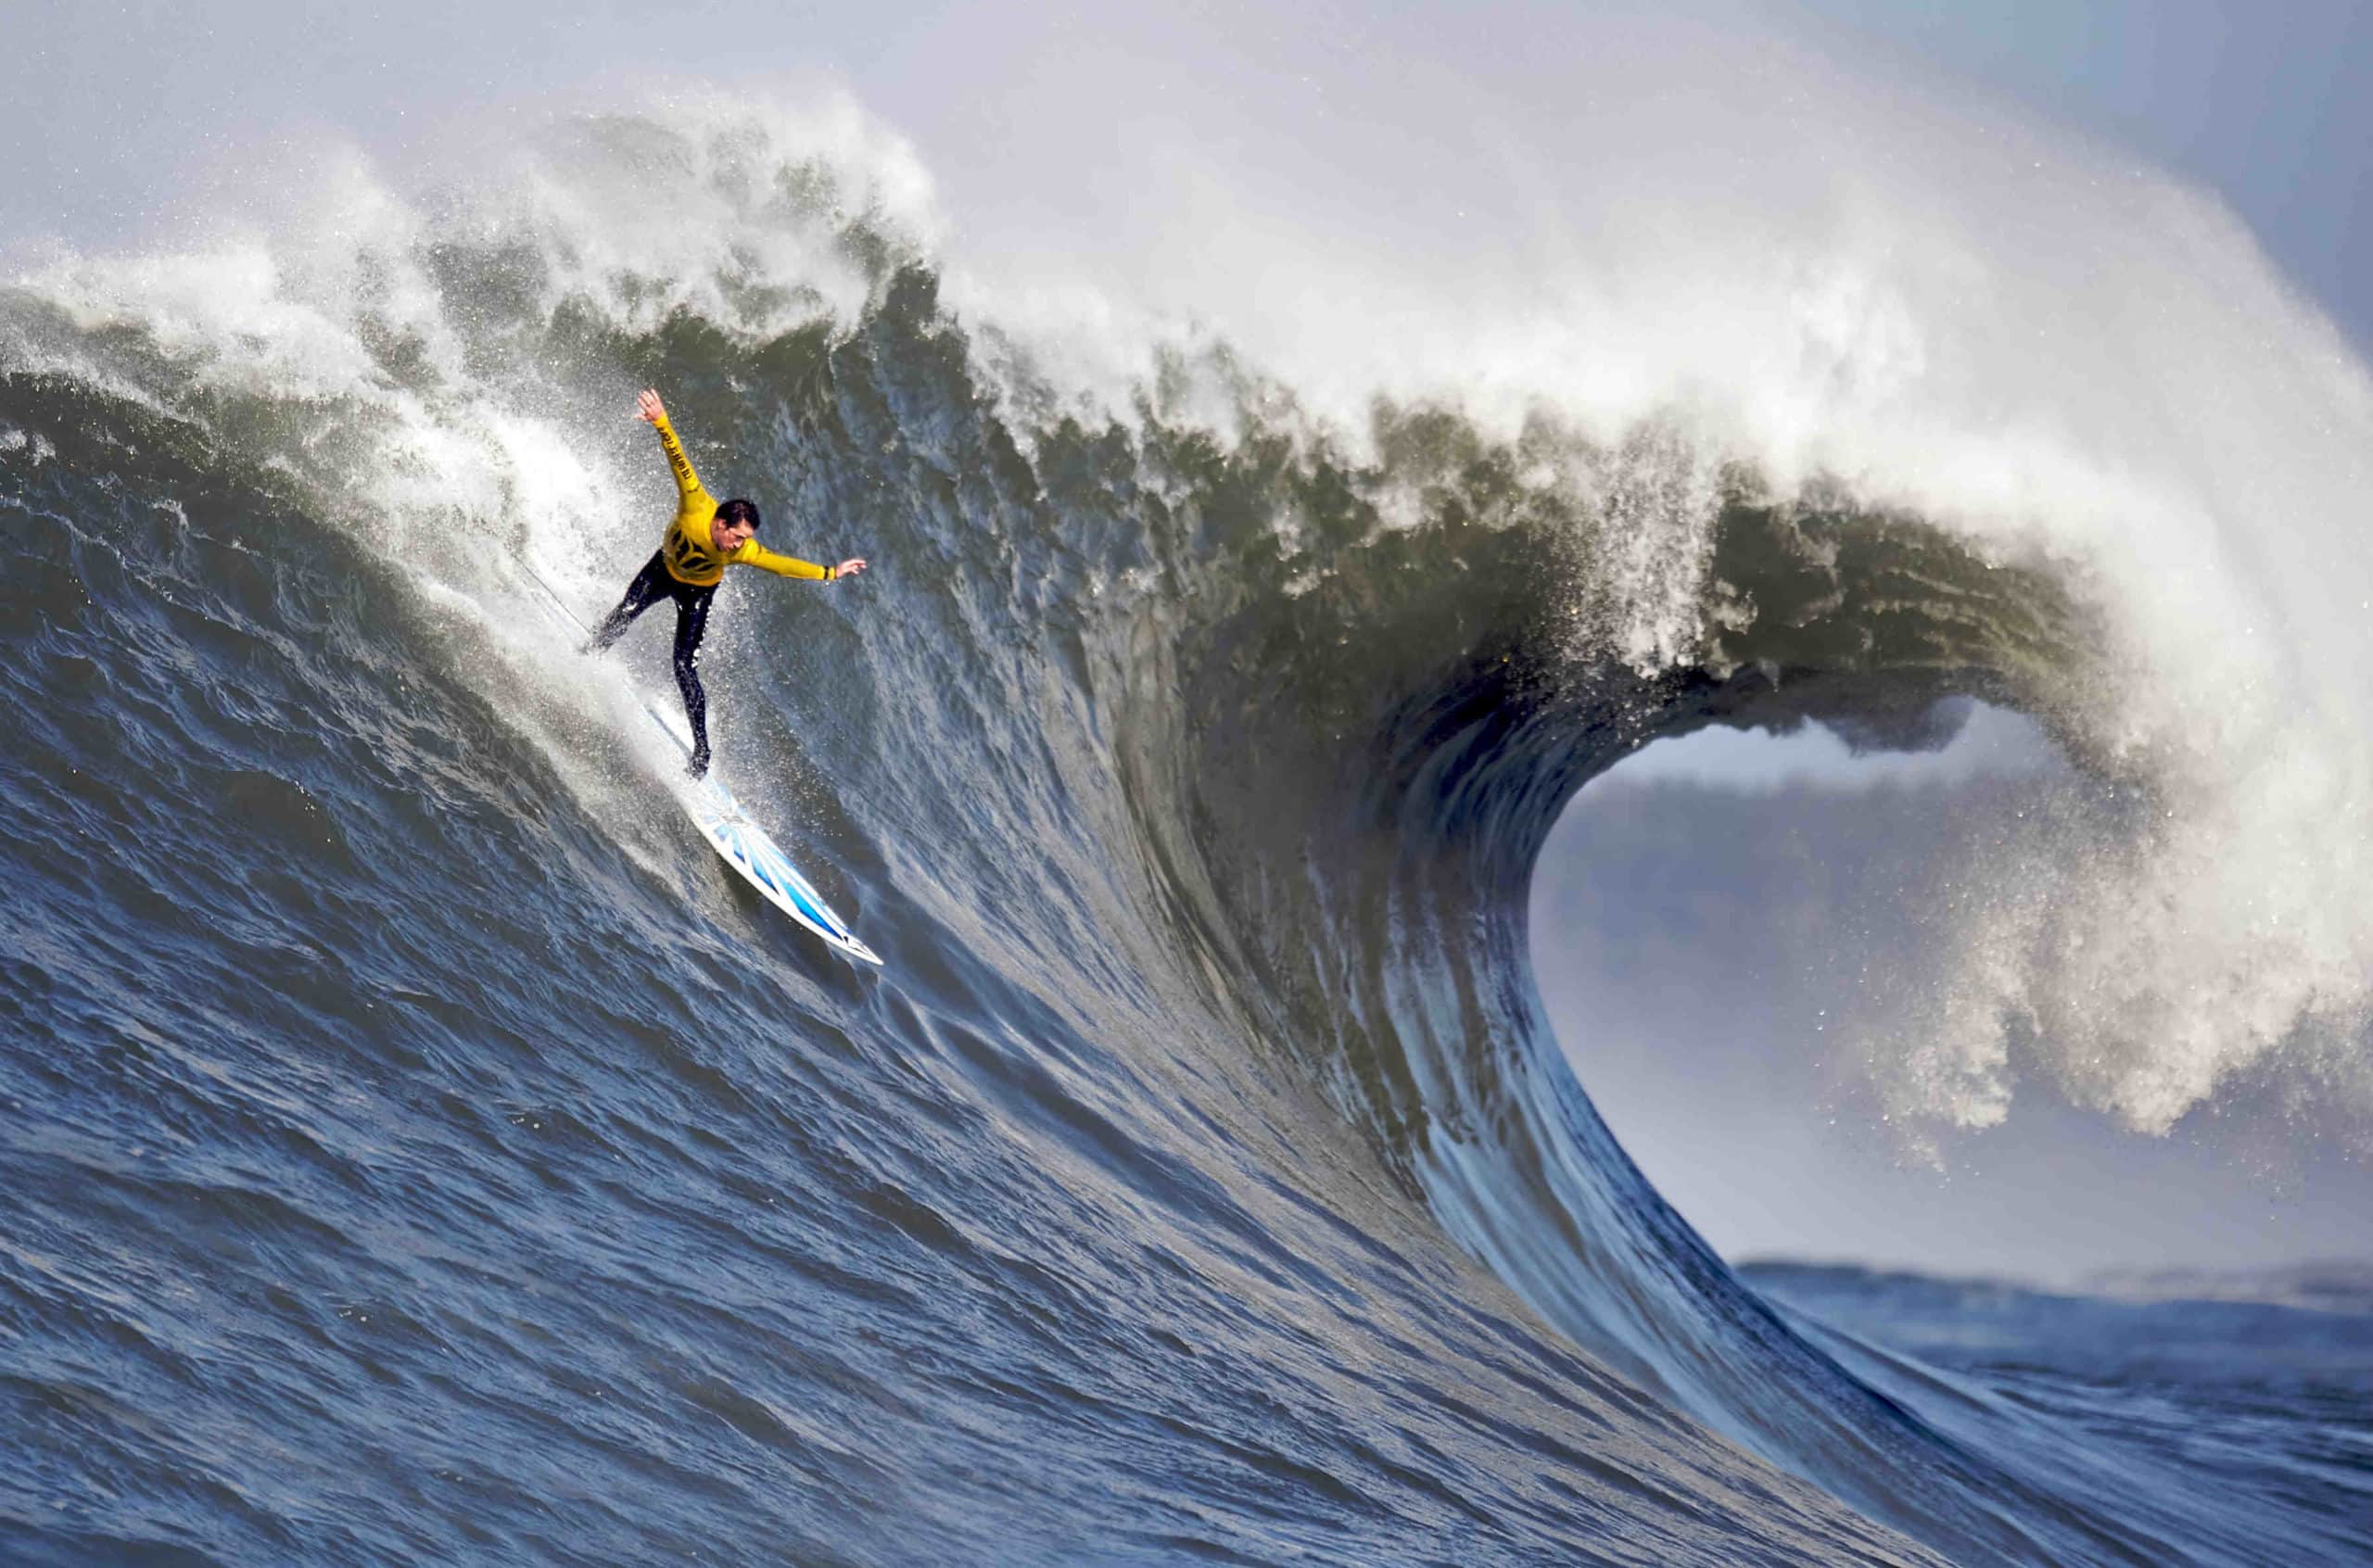 When did California start surfing?